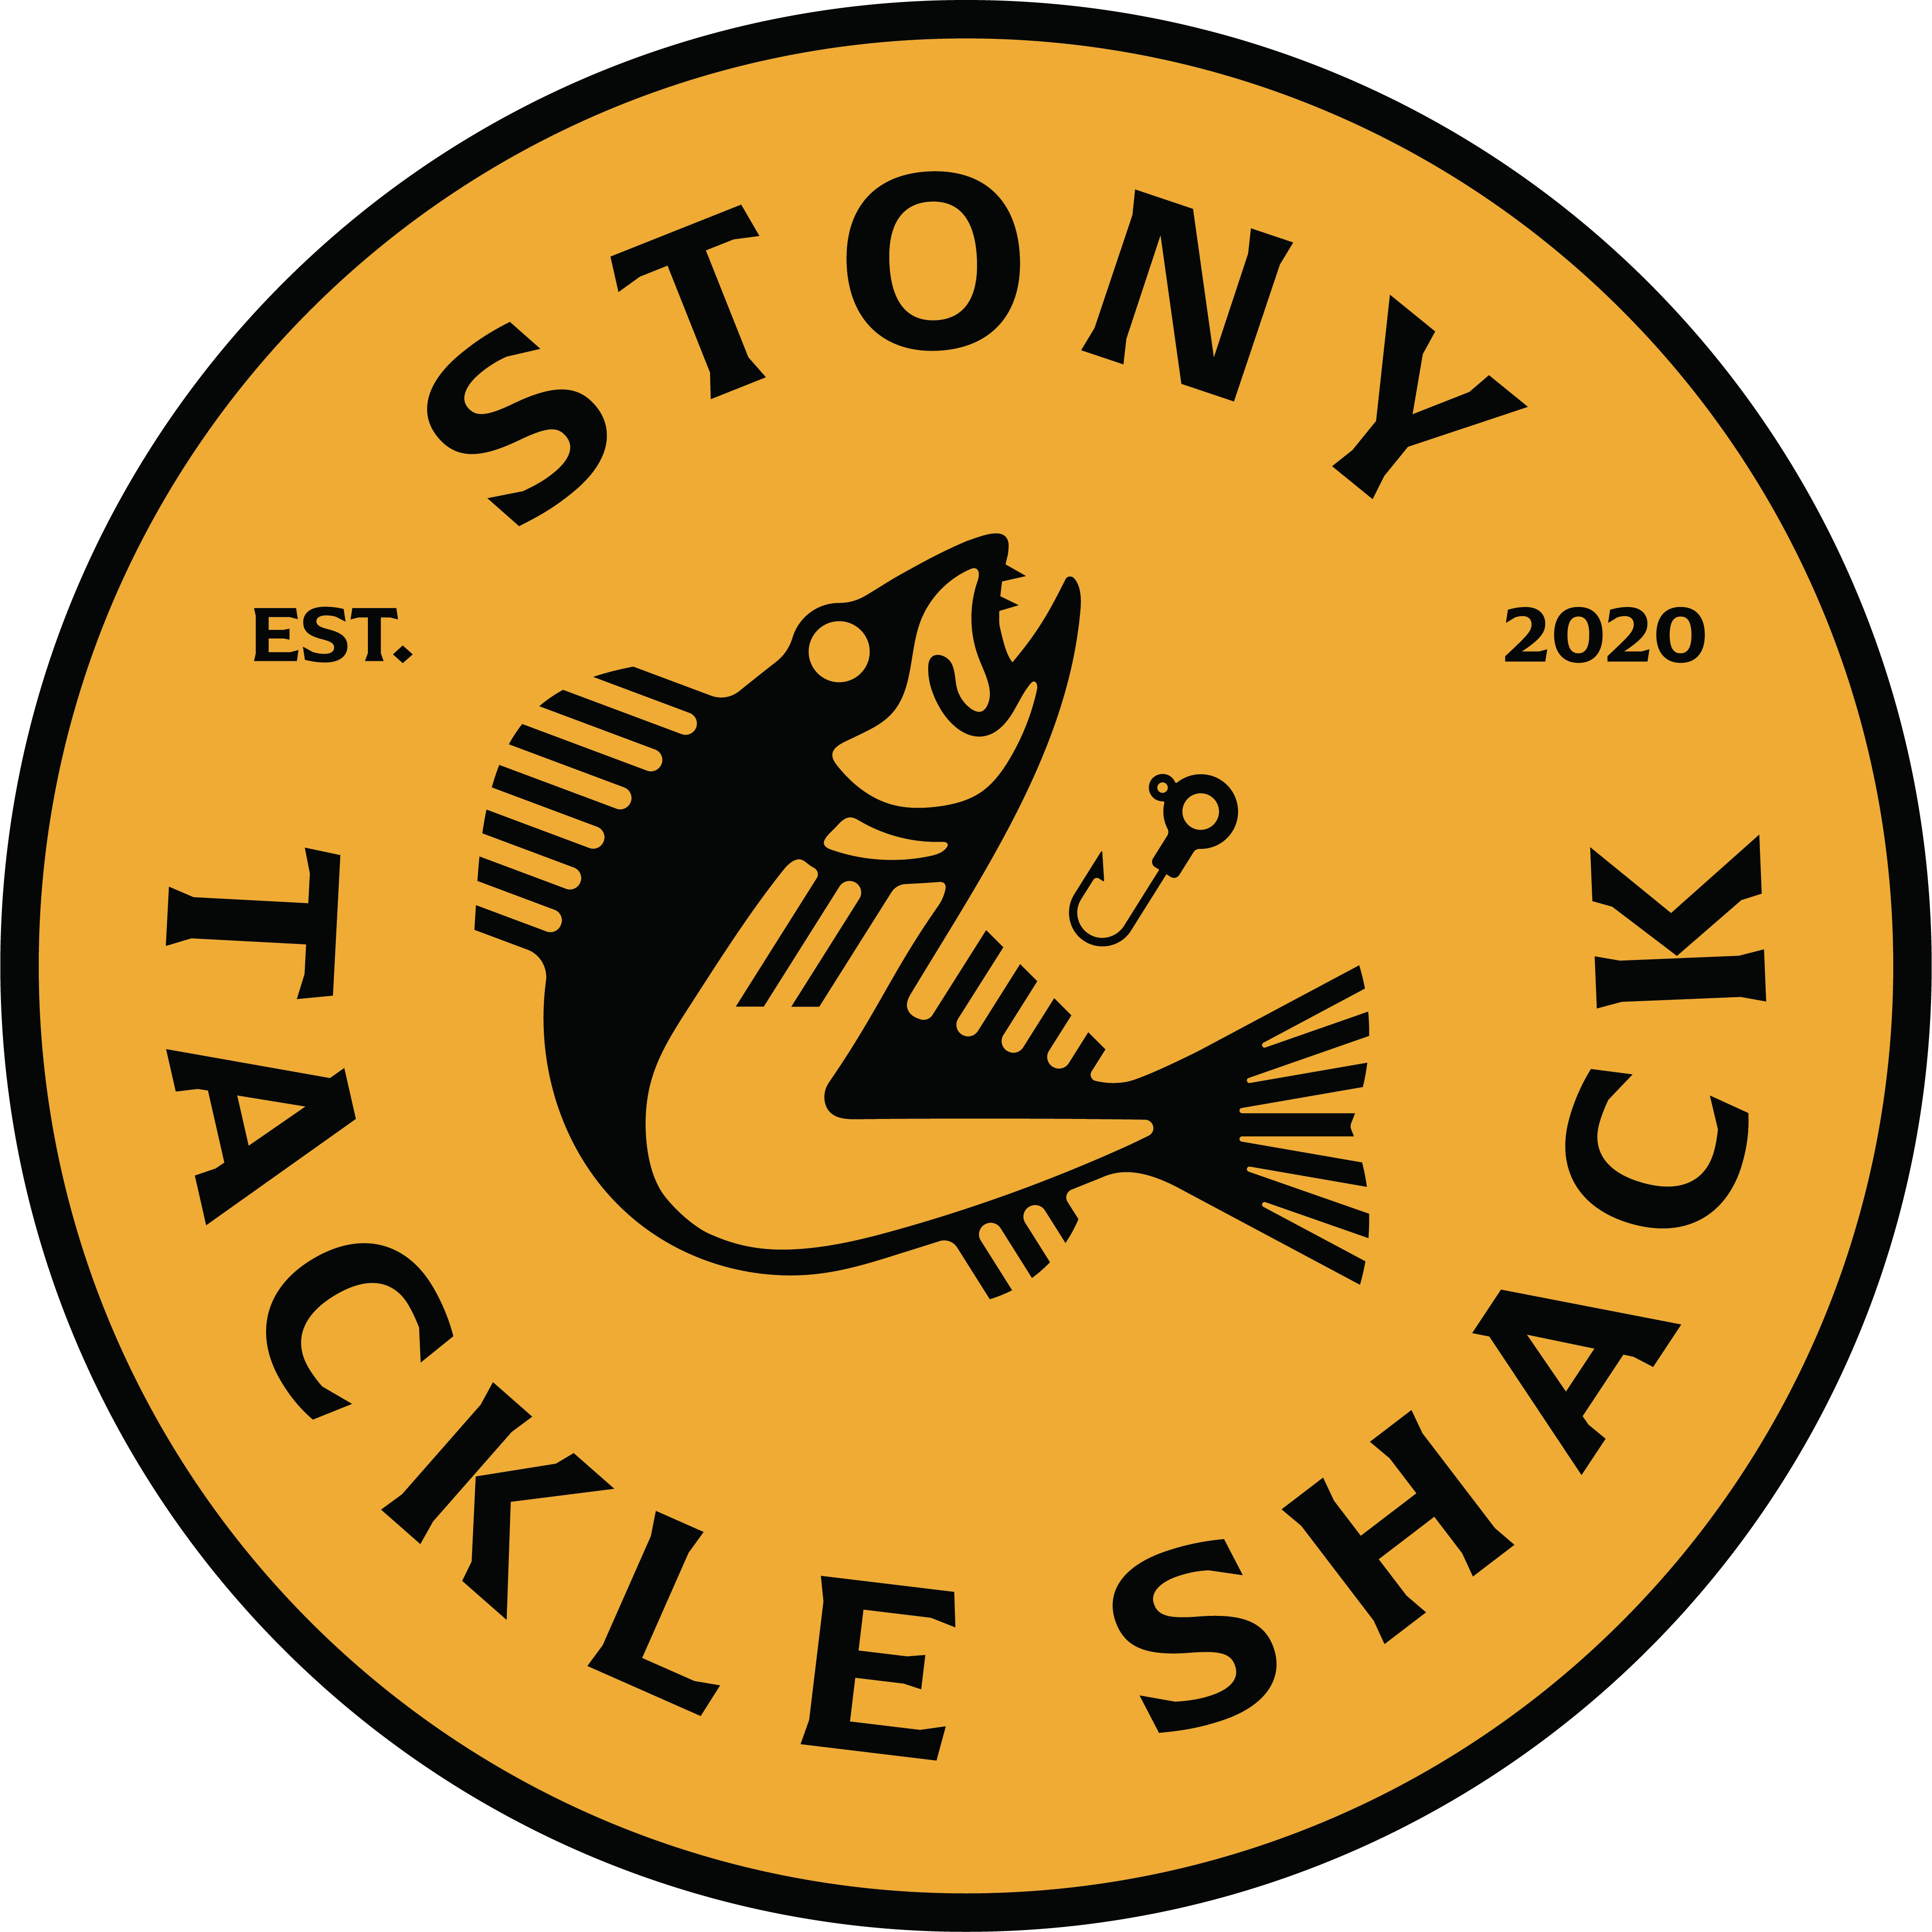 Stony Tackle Shack